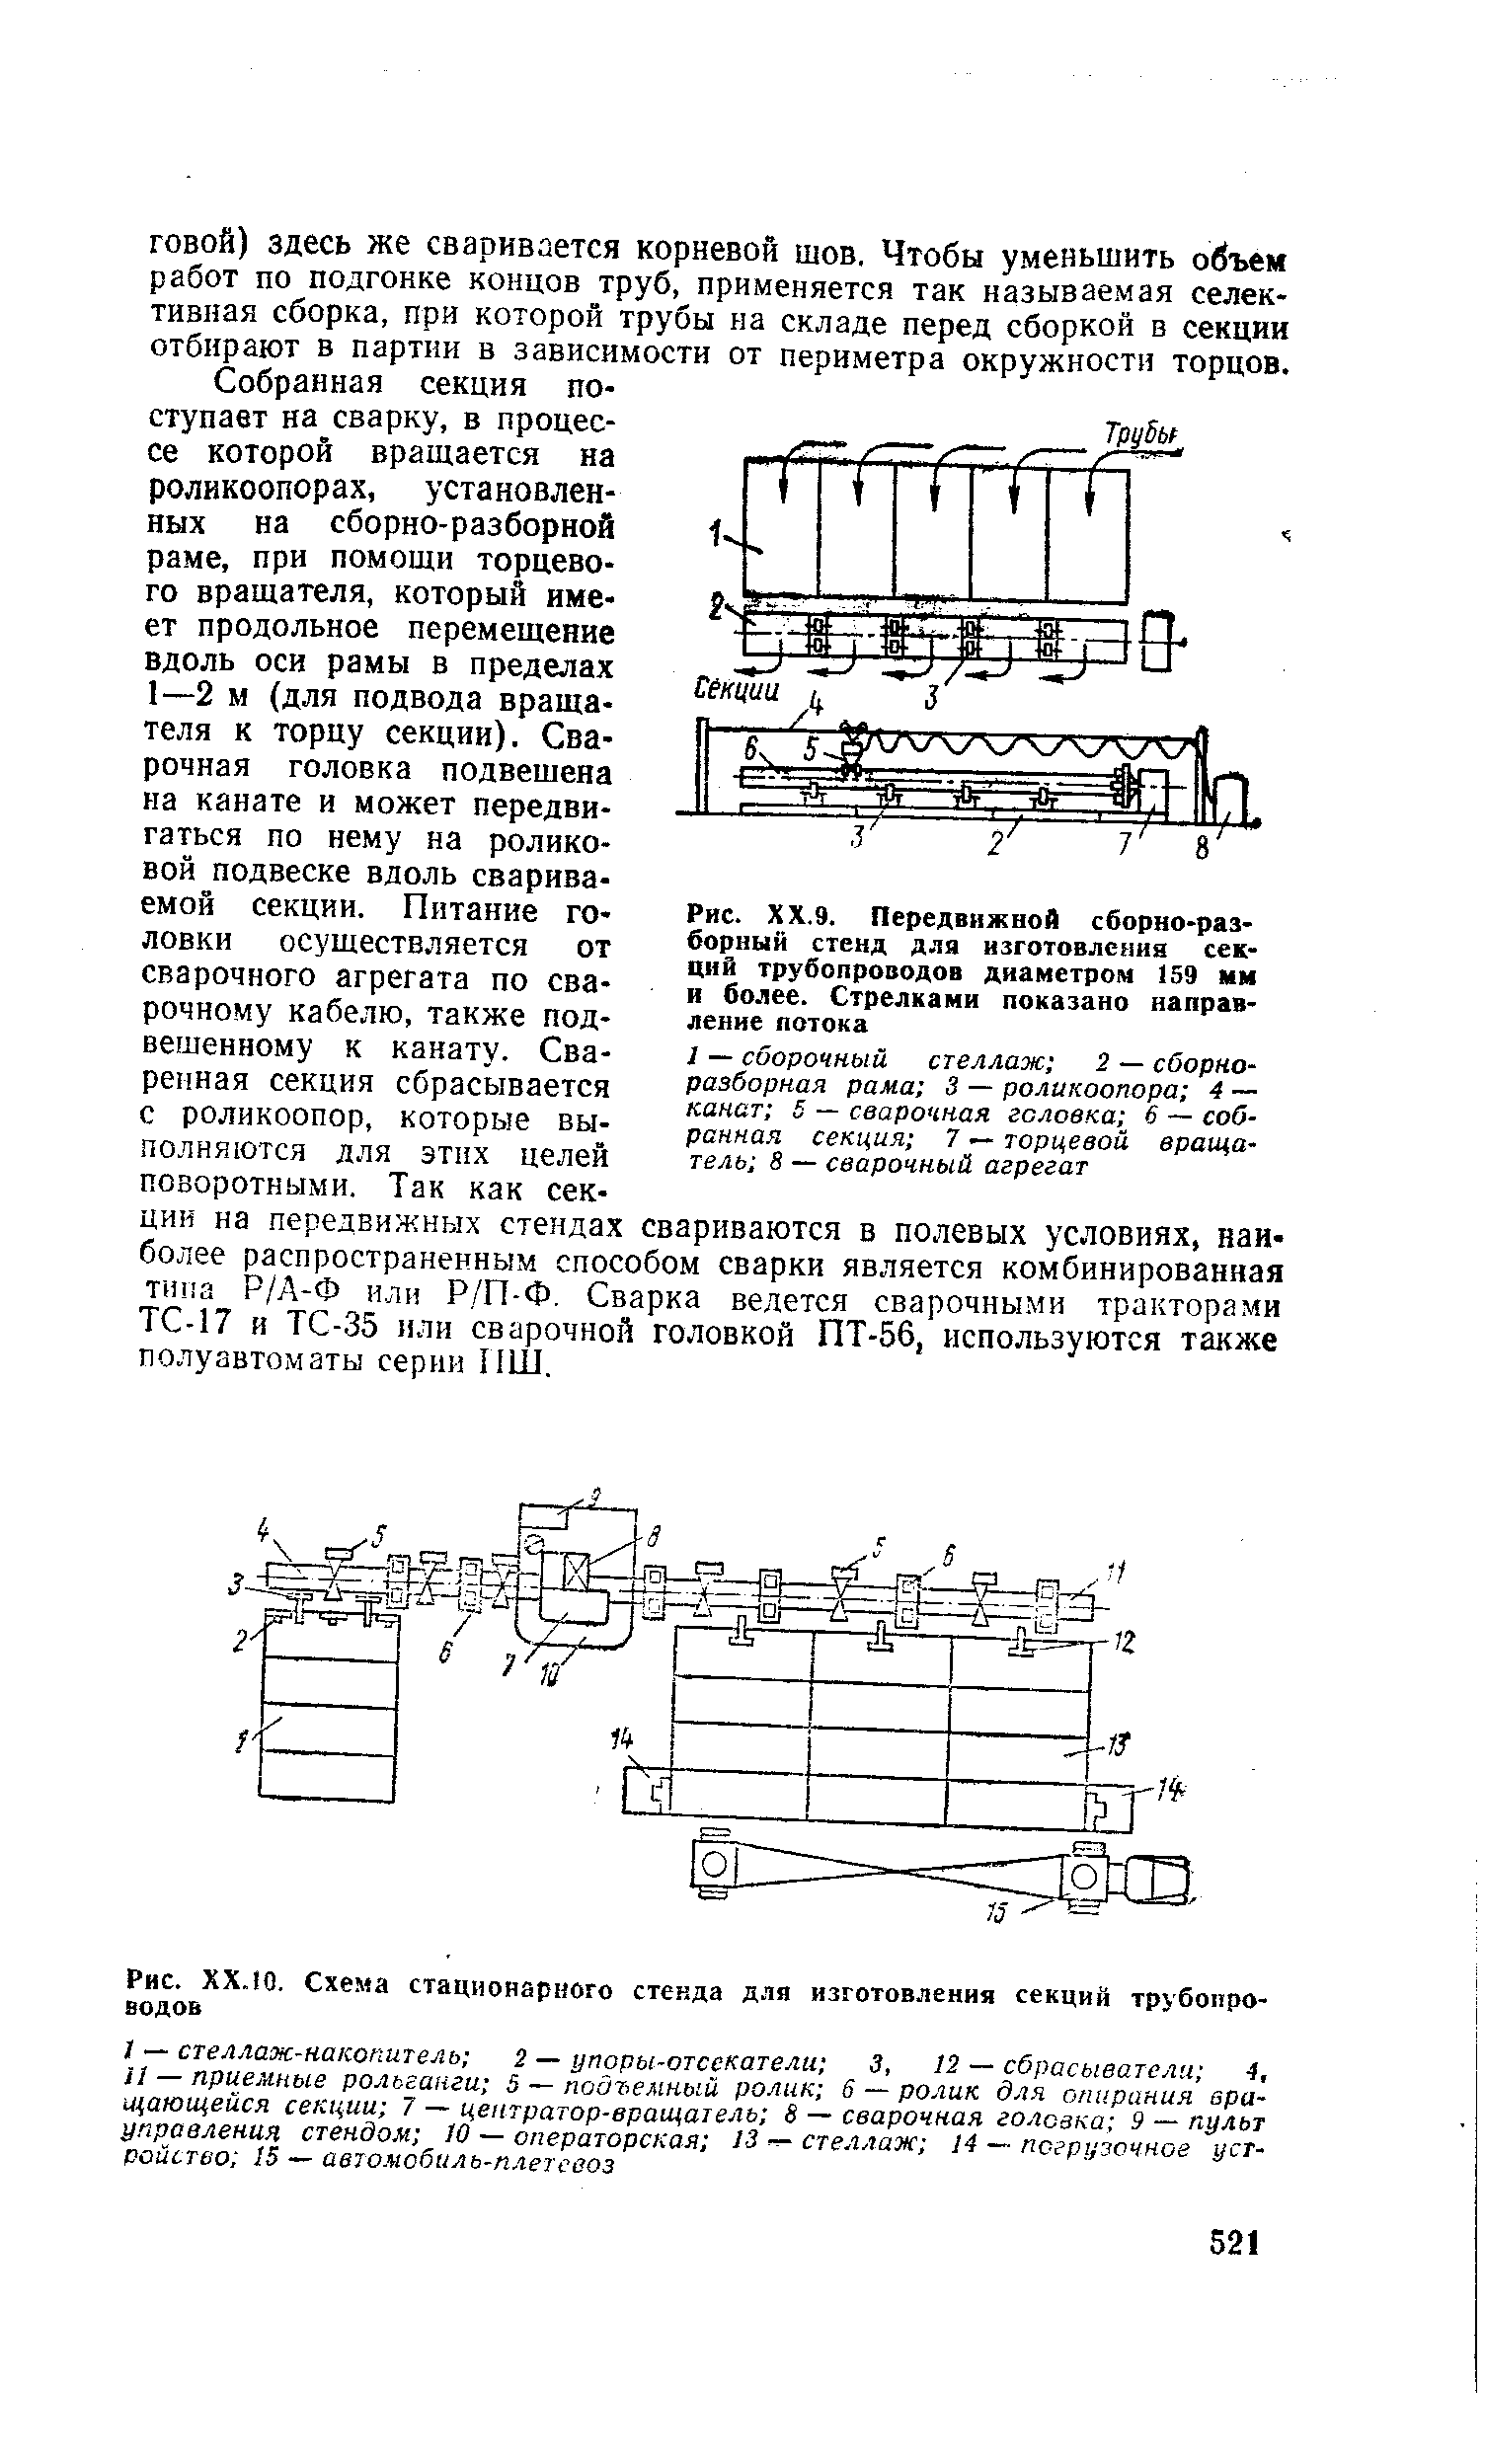 Рис. ХХ.Ю. Схема стационарного стенда для изготовления секций трубопроводов
